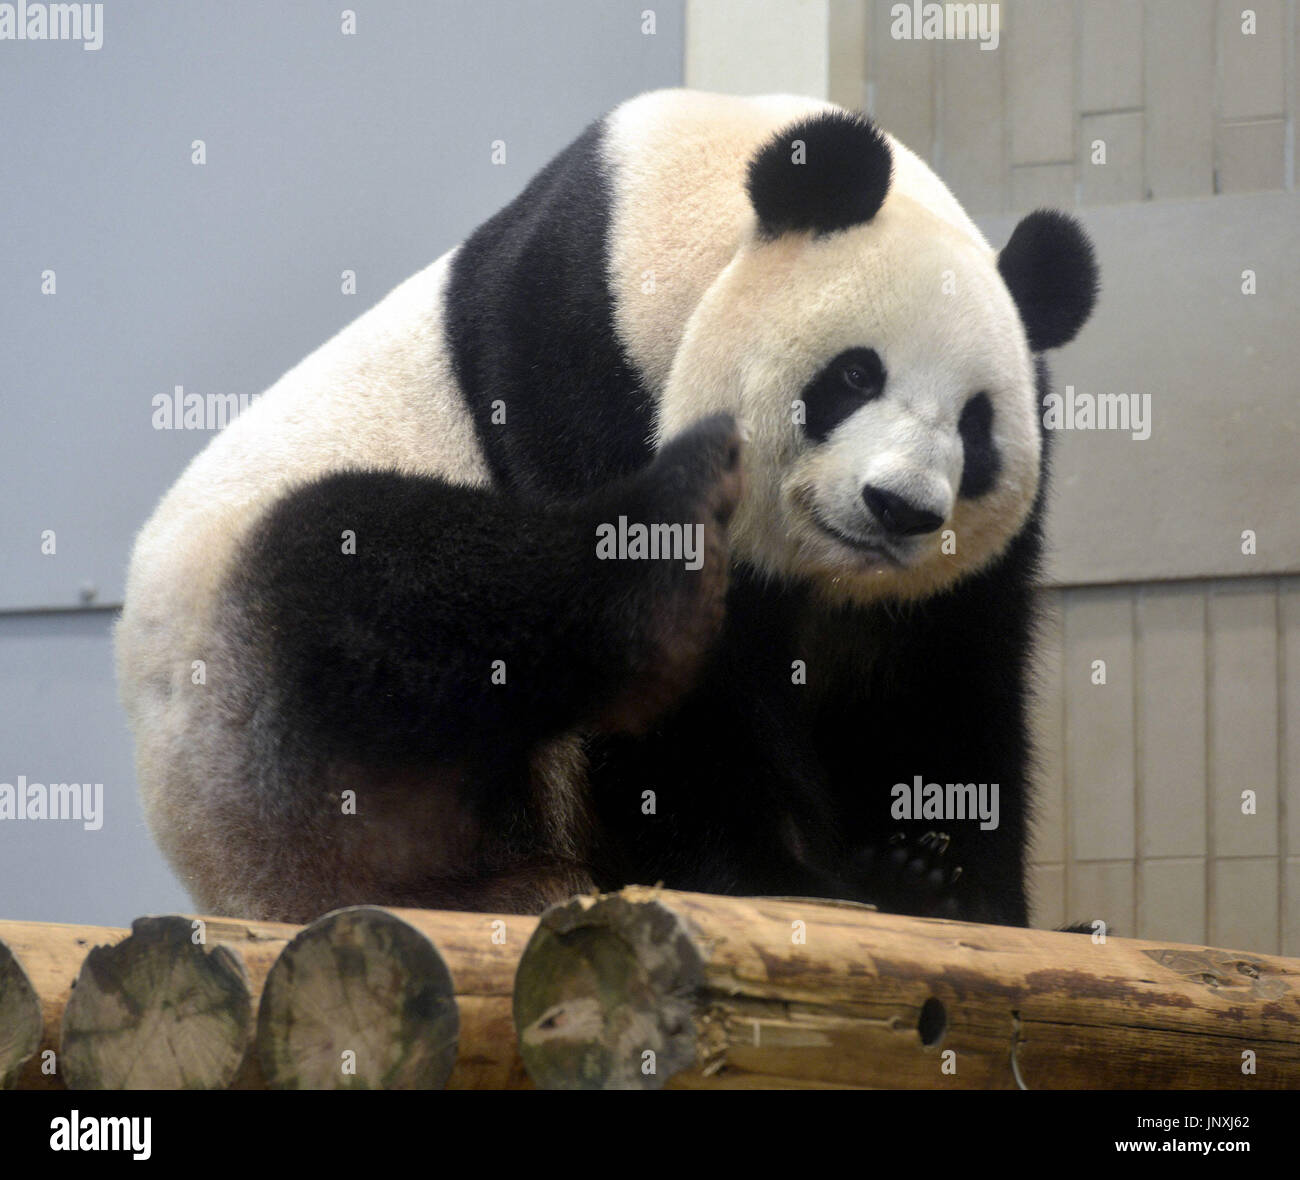 TOKYO, Japan - Photo shows giant panda Shin Shin at Tokyo's Ueno Zoo on ...